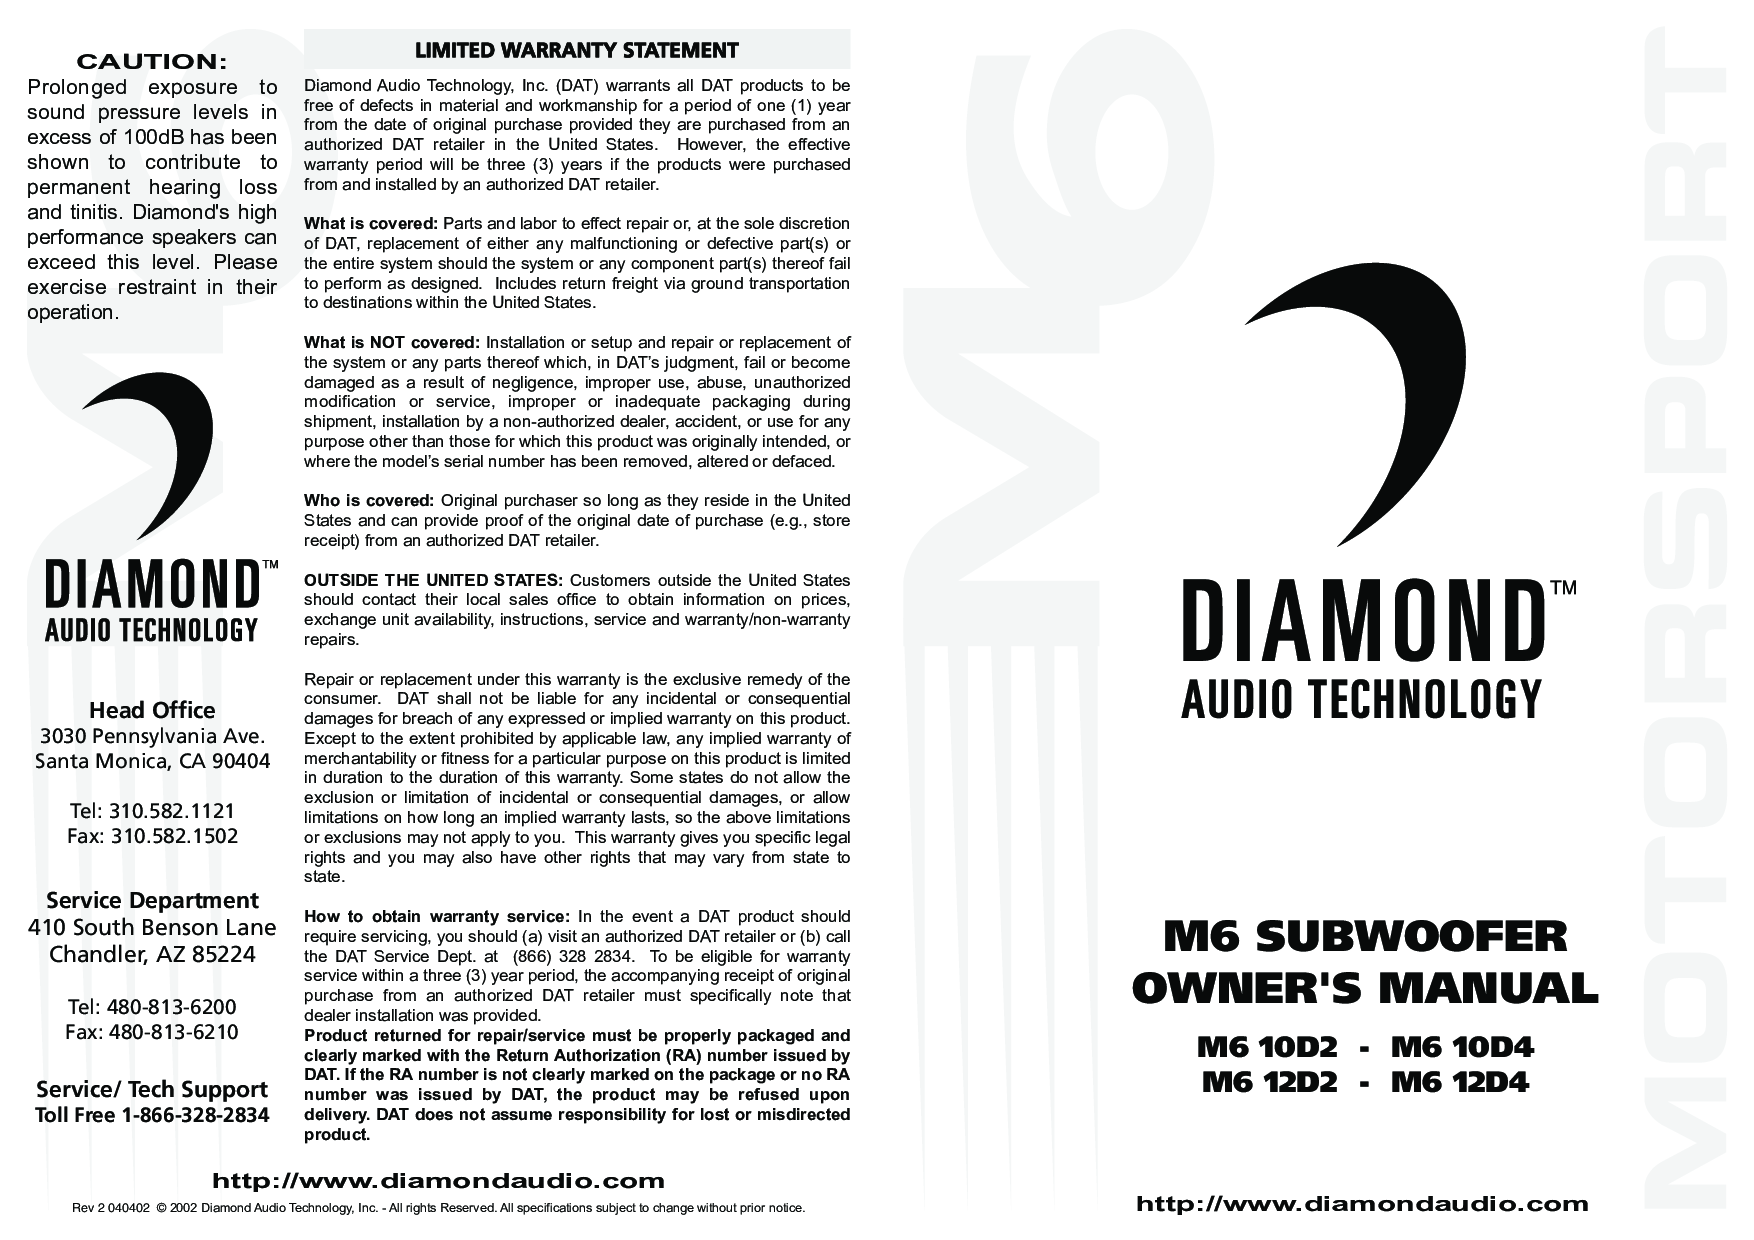 Diamond Audio Technology M6 12D4, M6 12D2, M6 10D2, M6 10D4 User Manual